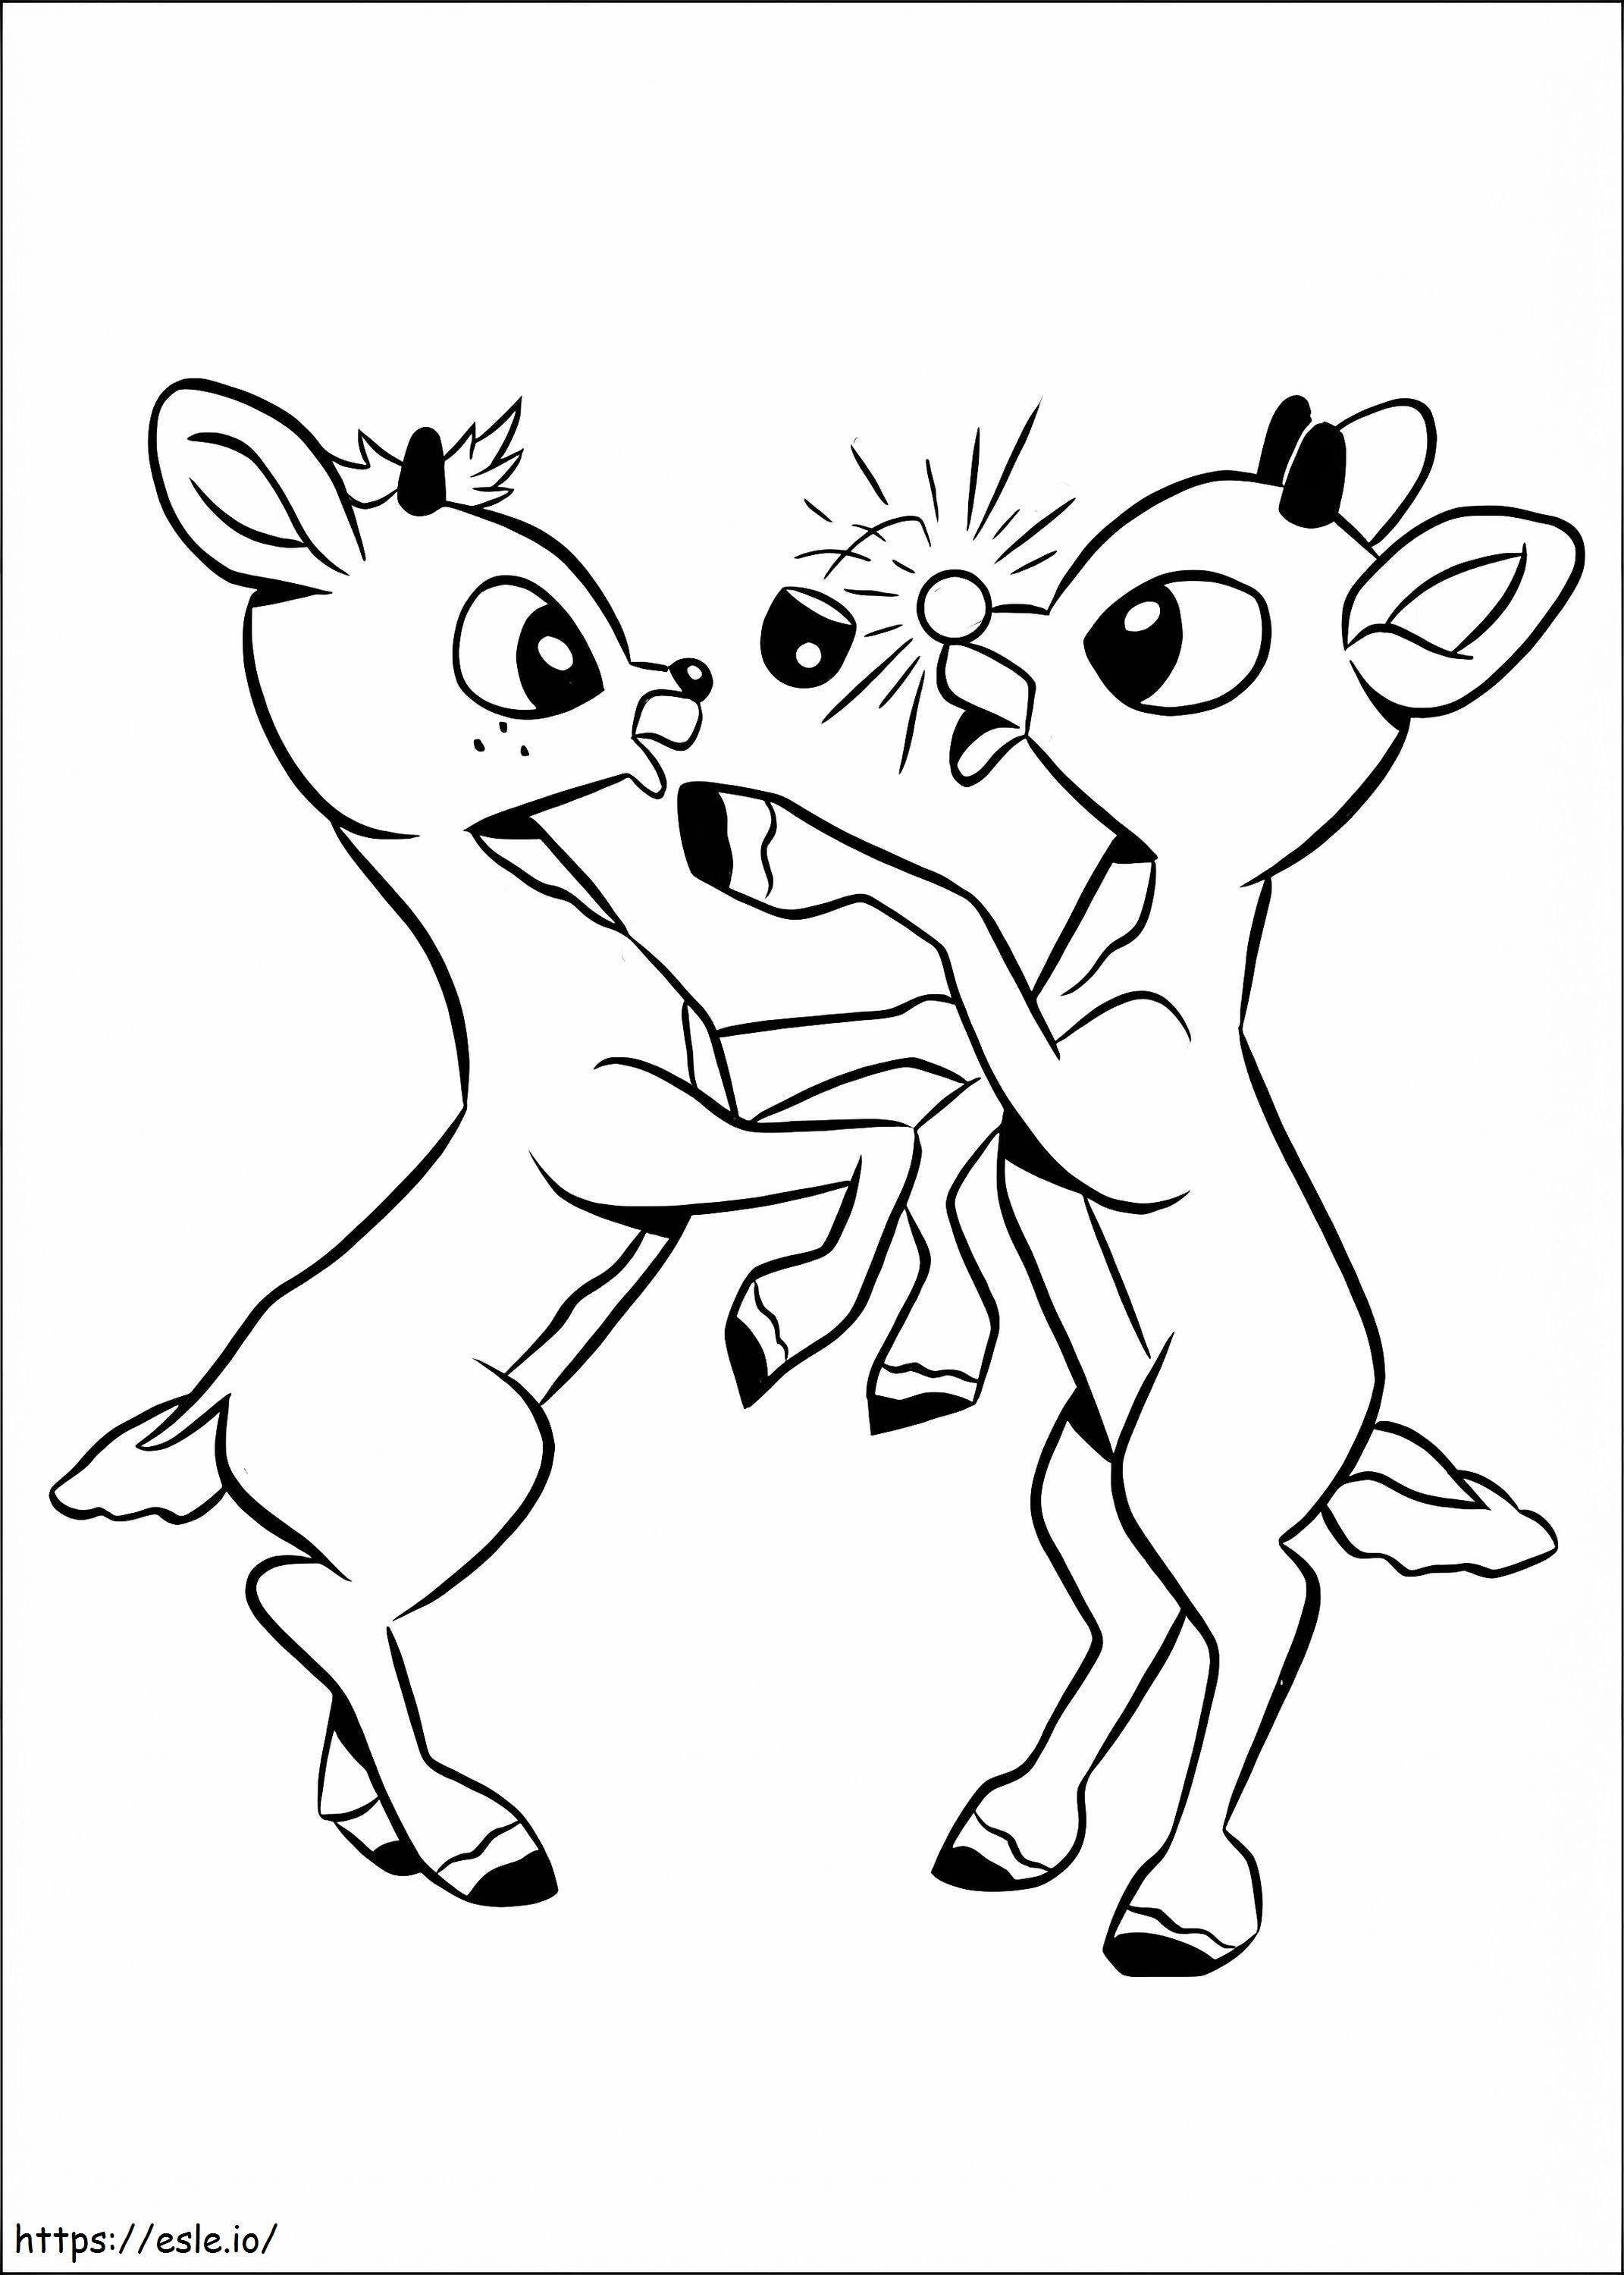 Rudolph e seu amigo dançam para colorir